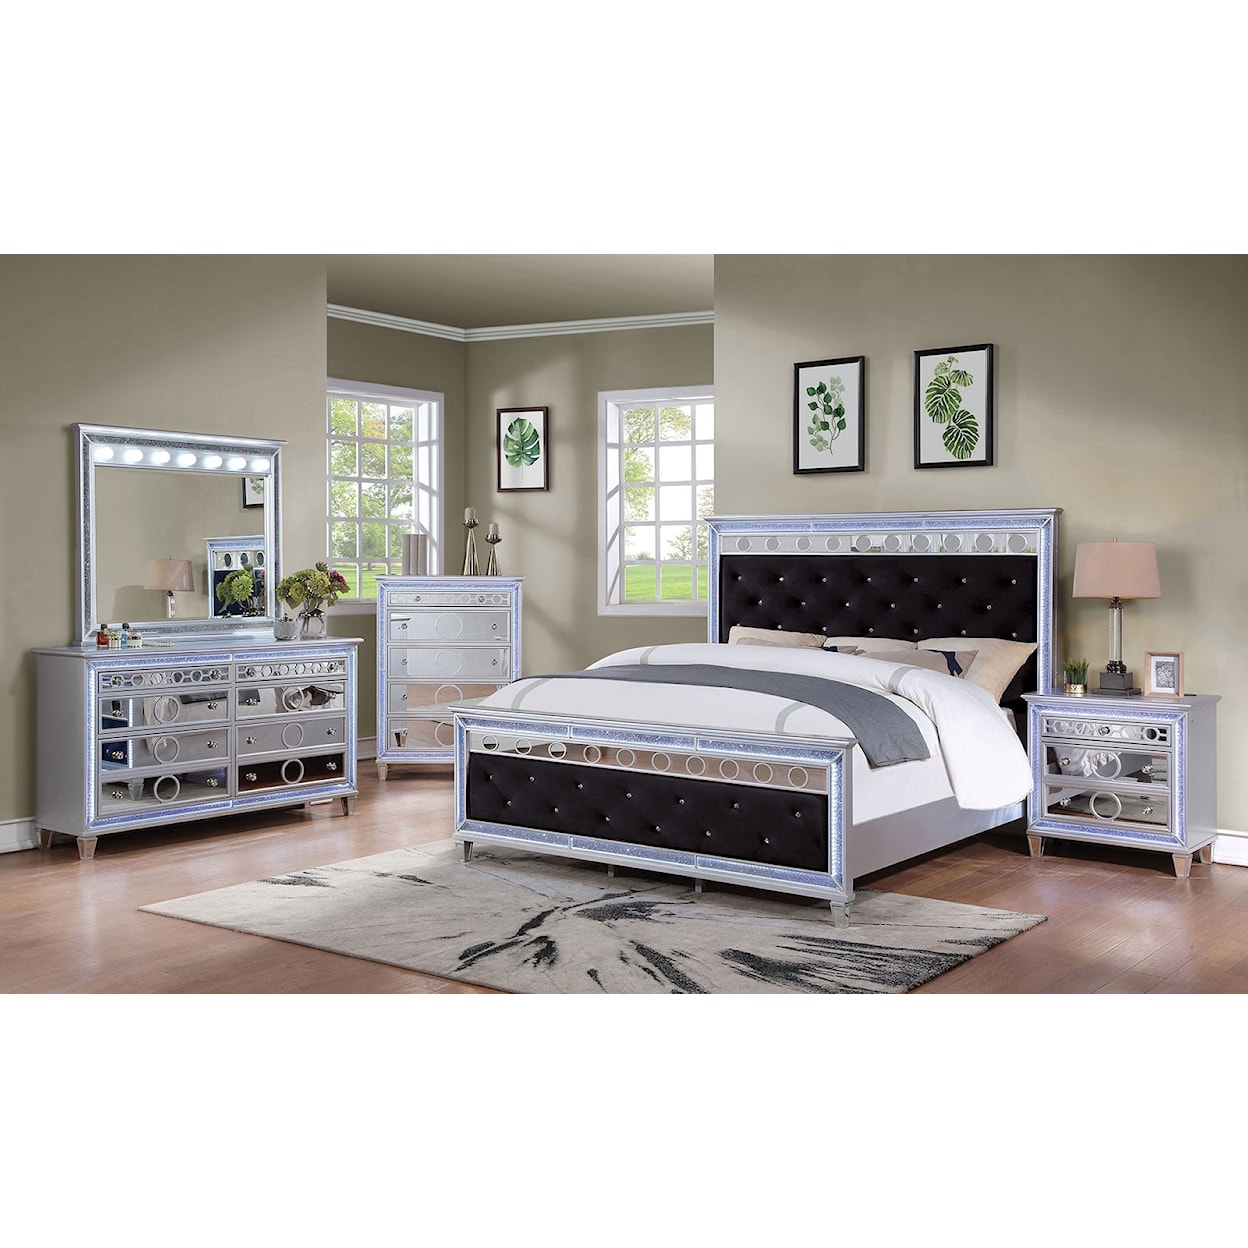 Furniture of America Mairead 5-Piece Queen Bedroom Set with 2 Nightstands